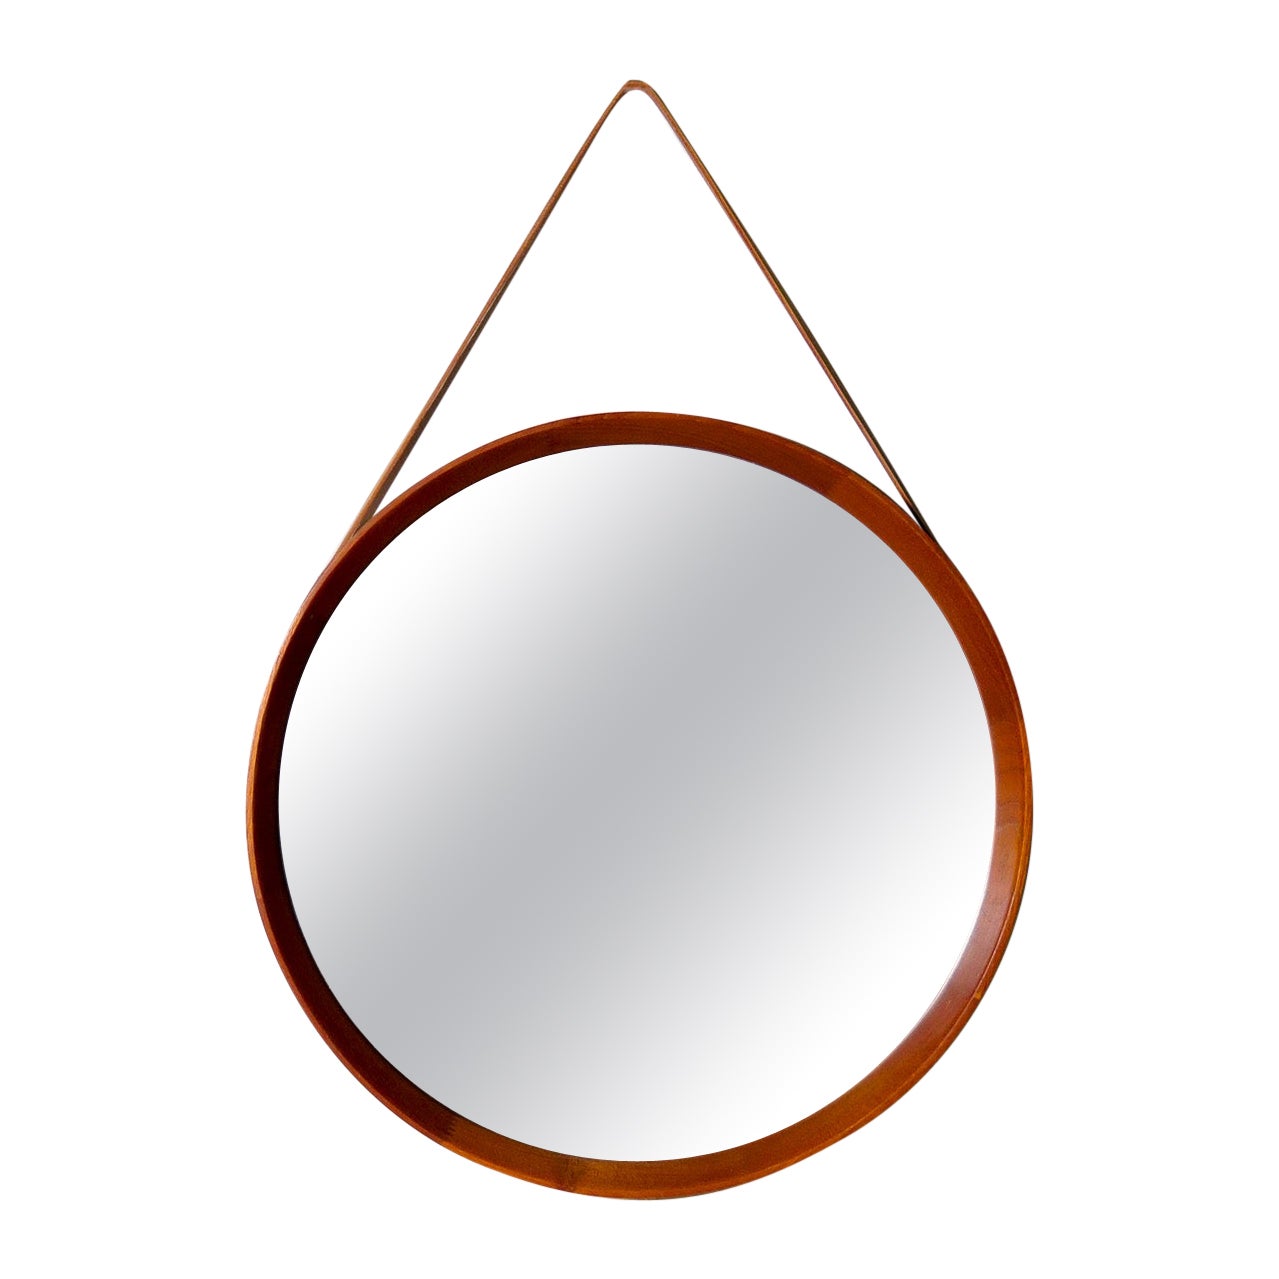 Midcentury Modern Round Mirror in Leather & Teak by Glas & Trä Hovmantorp Sweden For Sale